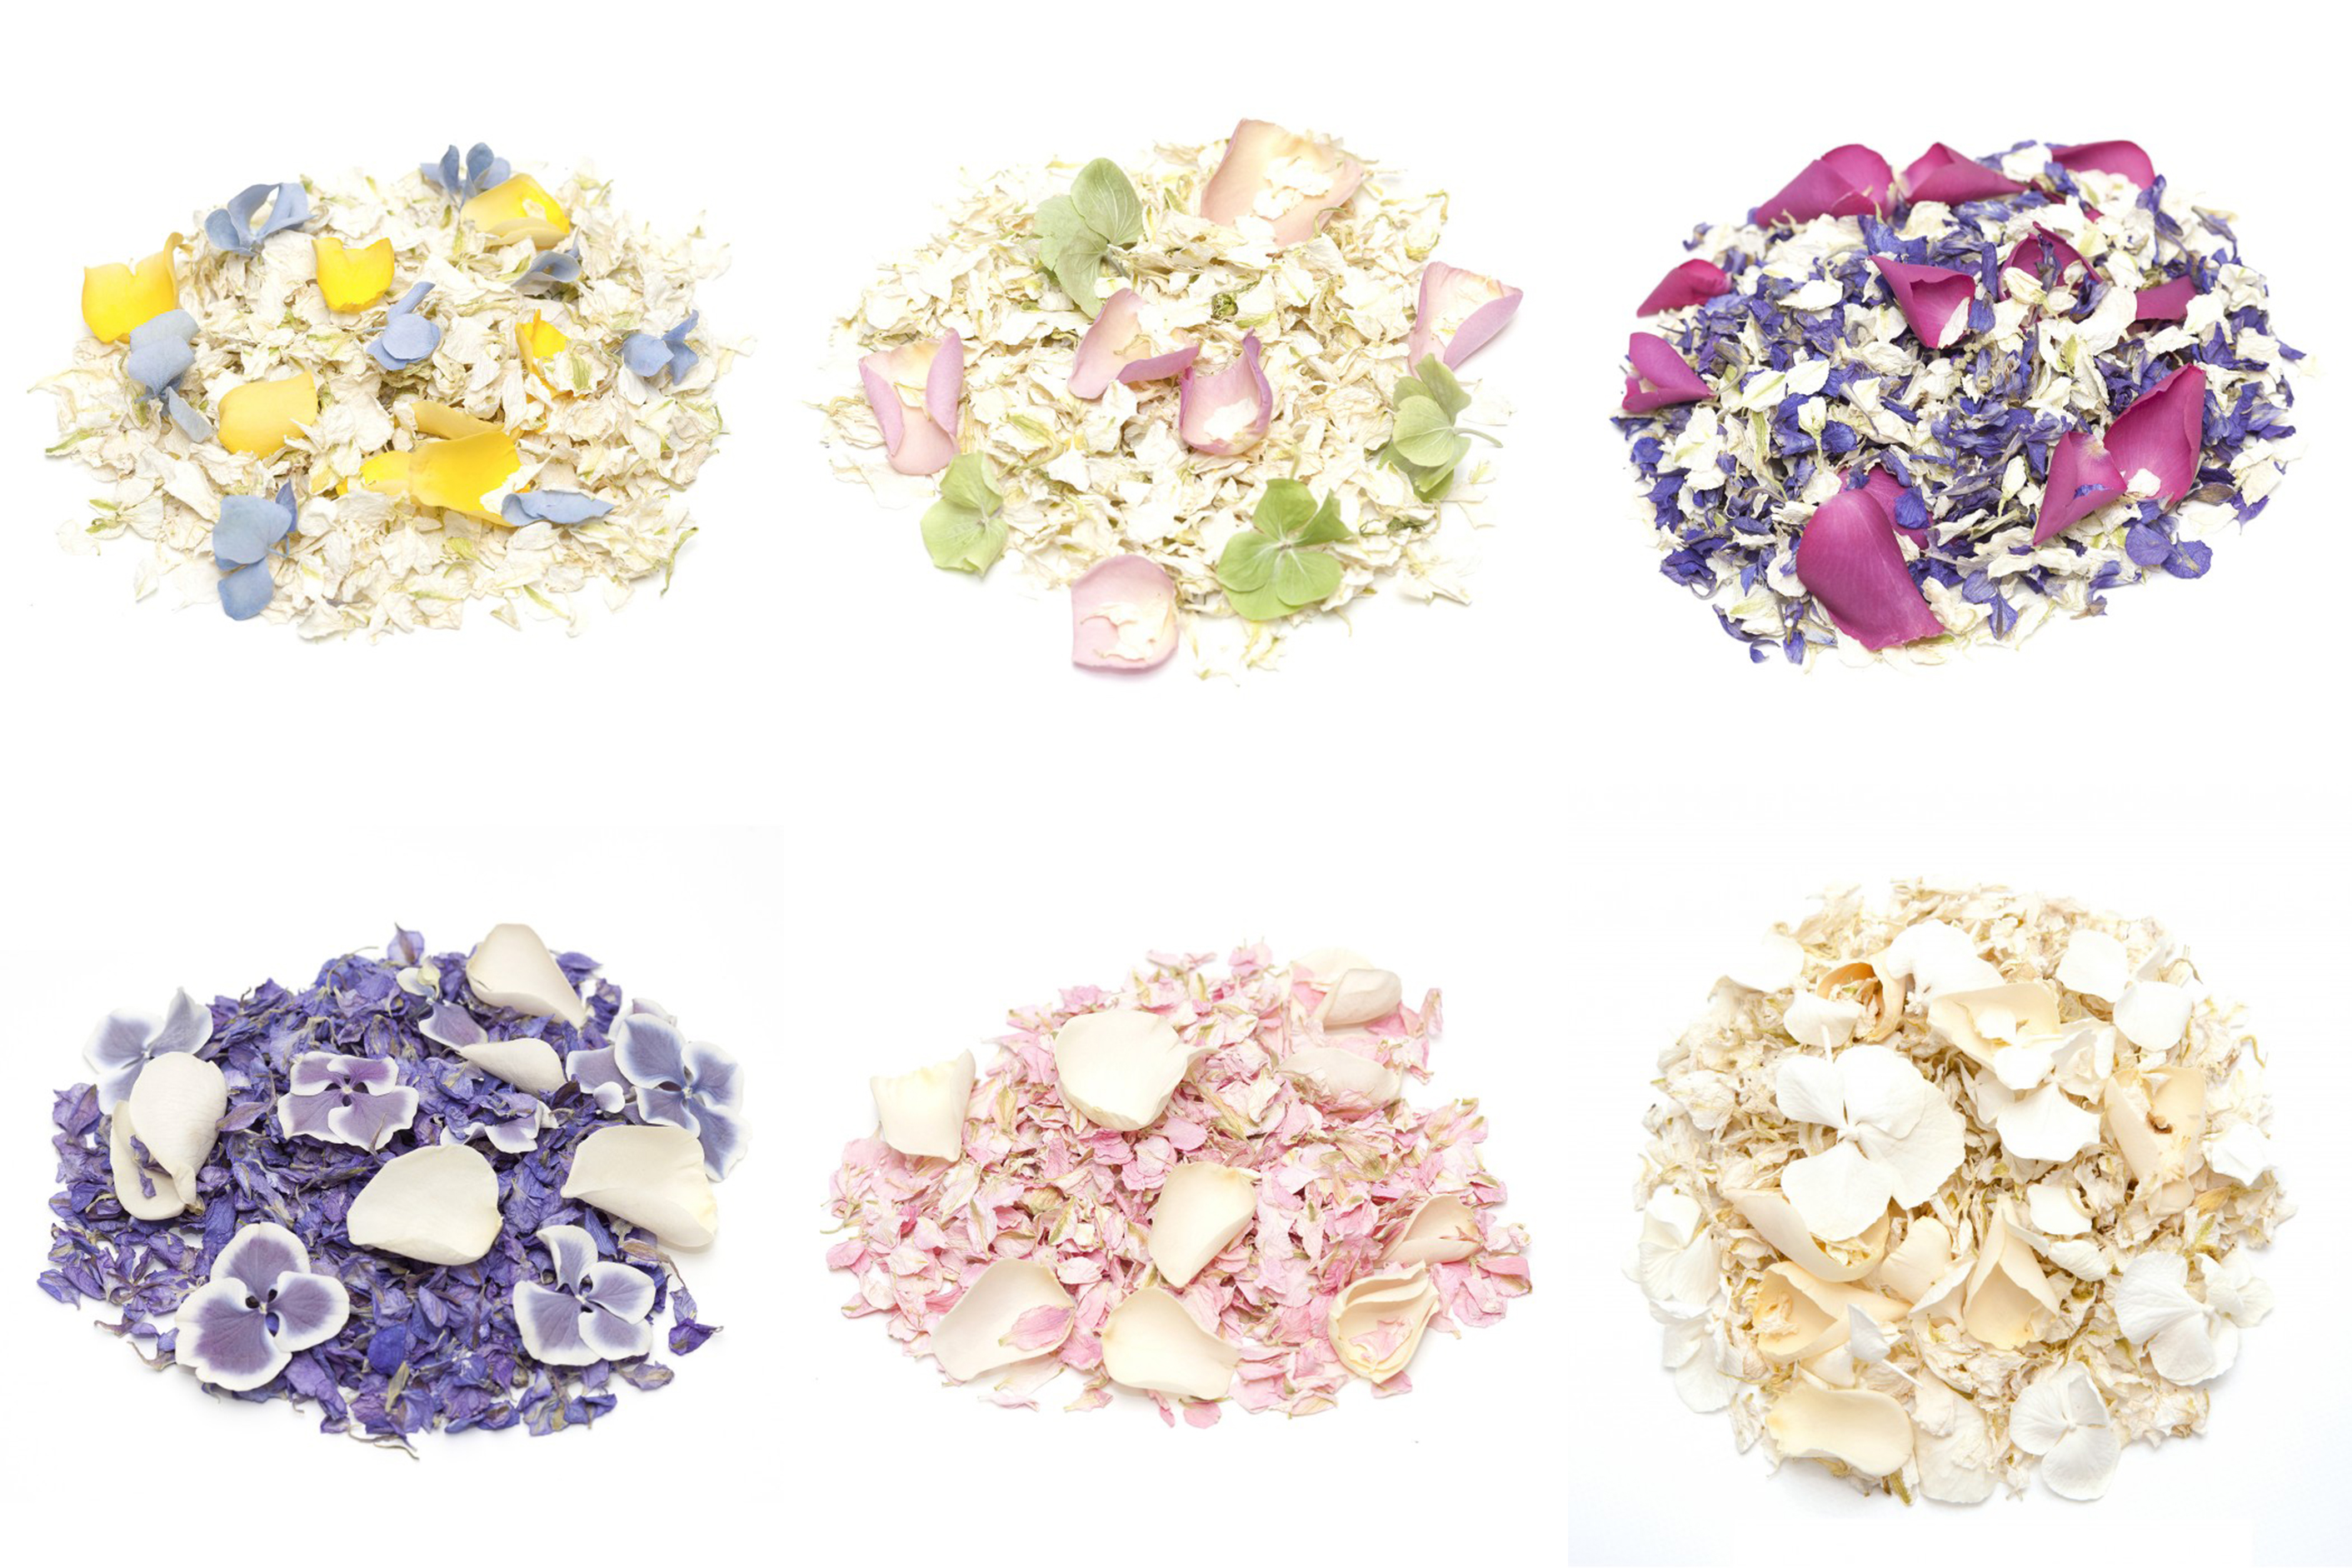 Biodegradable Dye Free Wedding Confetti Mixes